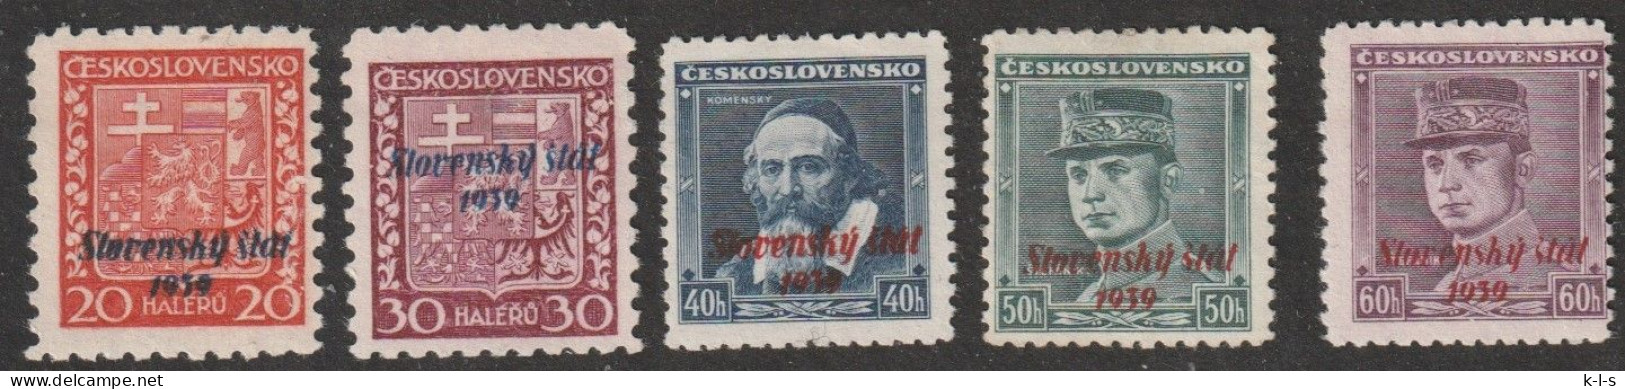 Slowakei: 1939, Freimarken. Mi. Nr. 4, 6, 7, 8, 10, Marken Der Tschechoslowakei Sowie Slowakei.   **/MNH - Nuevos